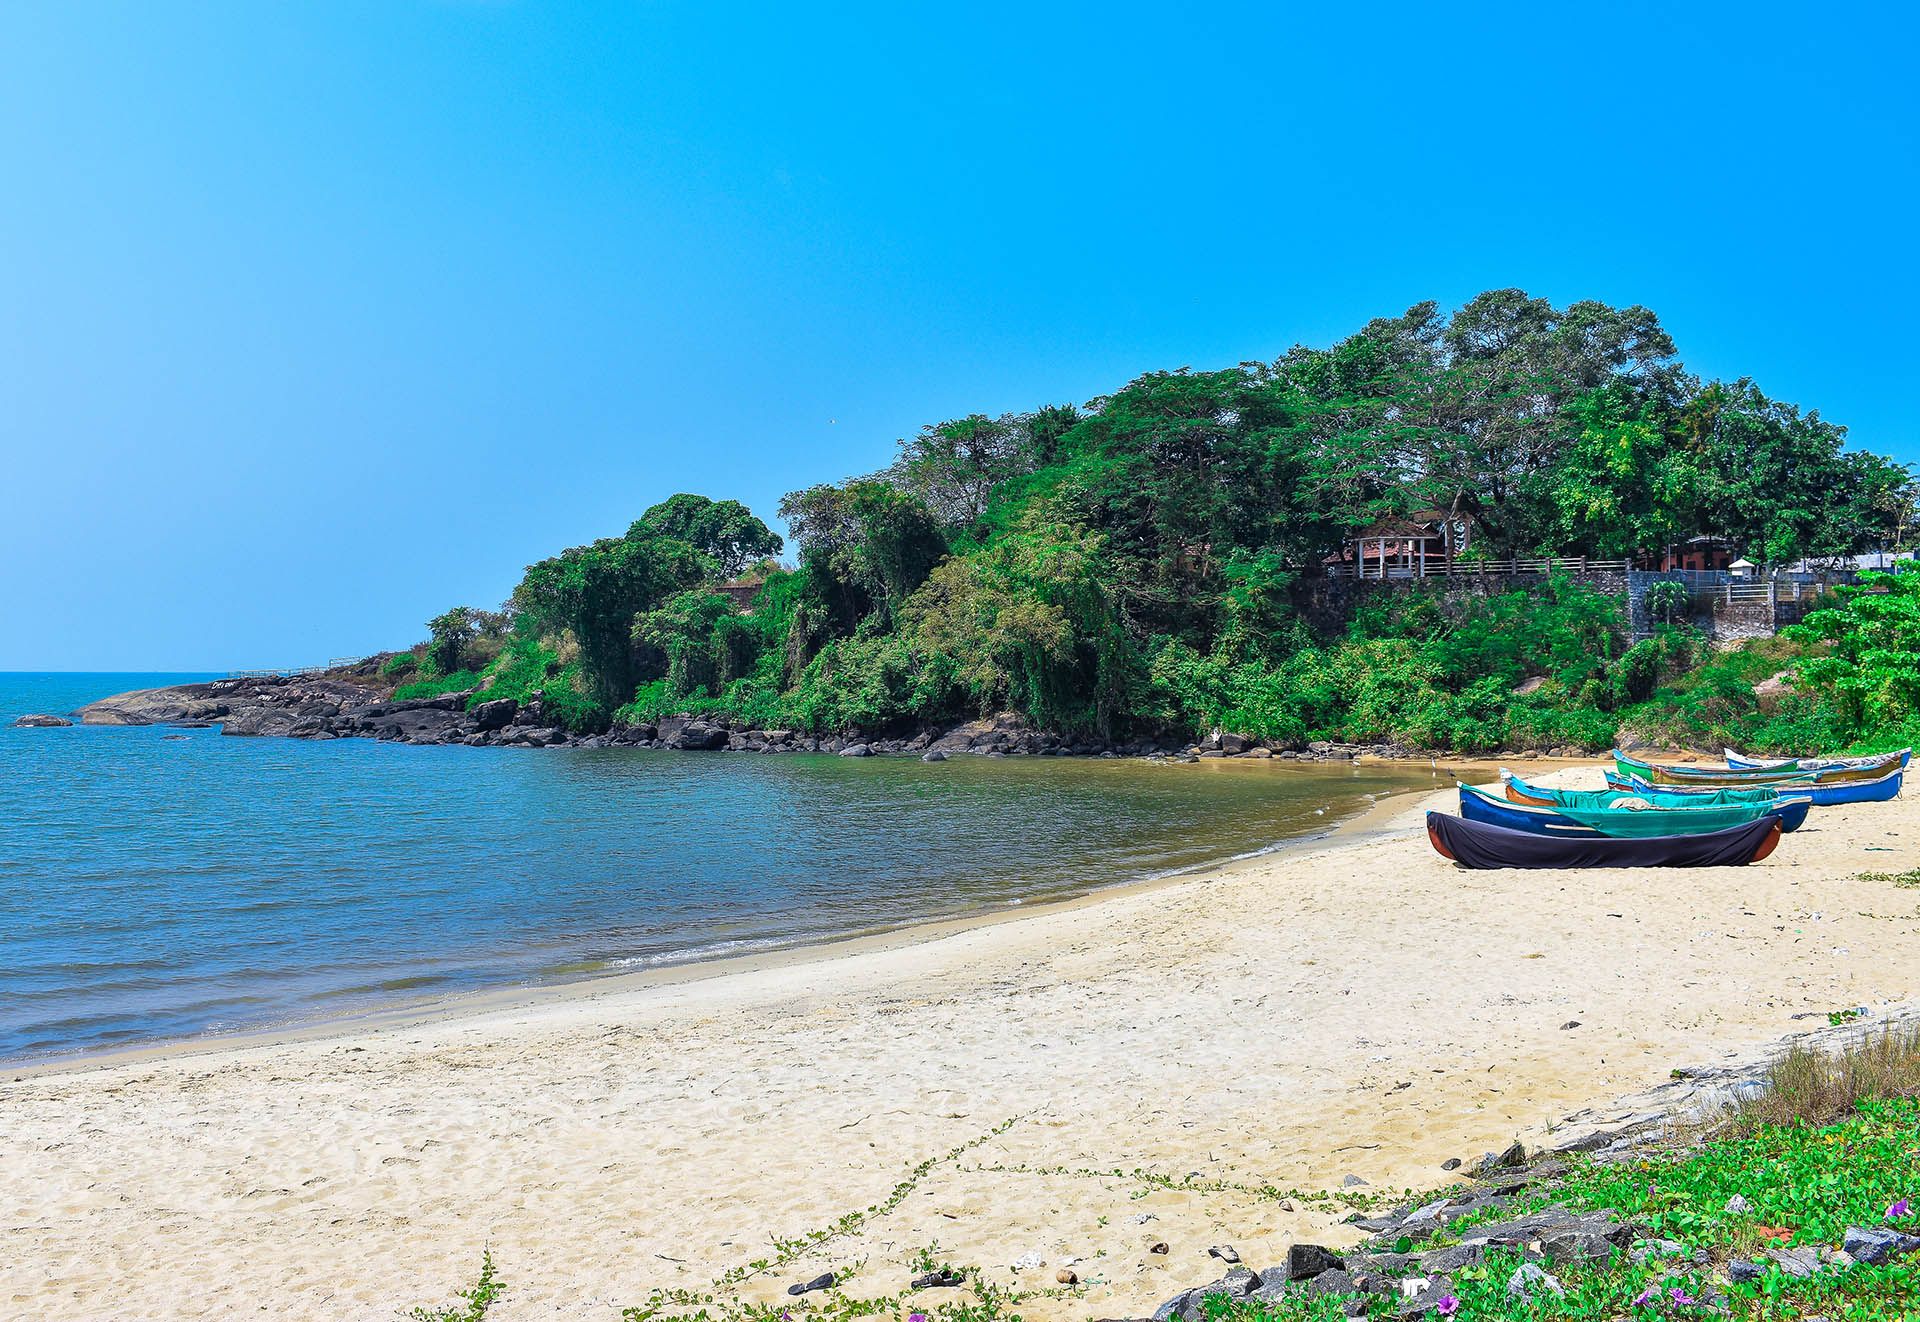 Kapad beach located in Calicut © Shutterstock